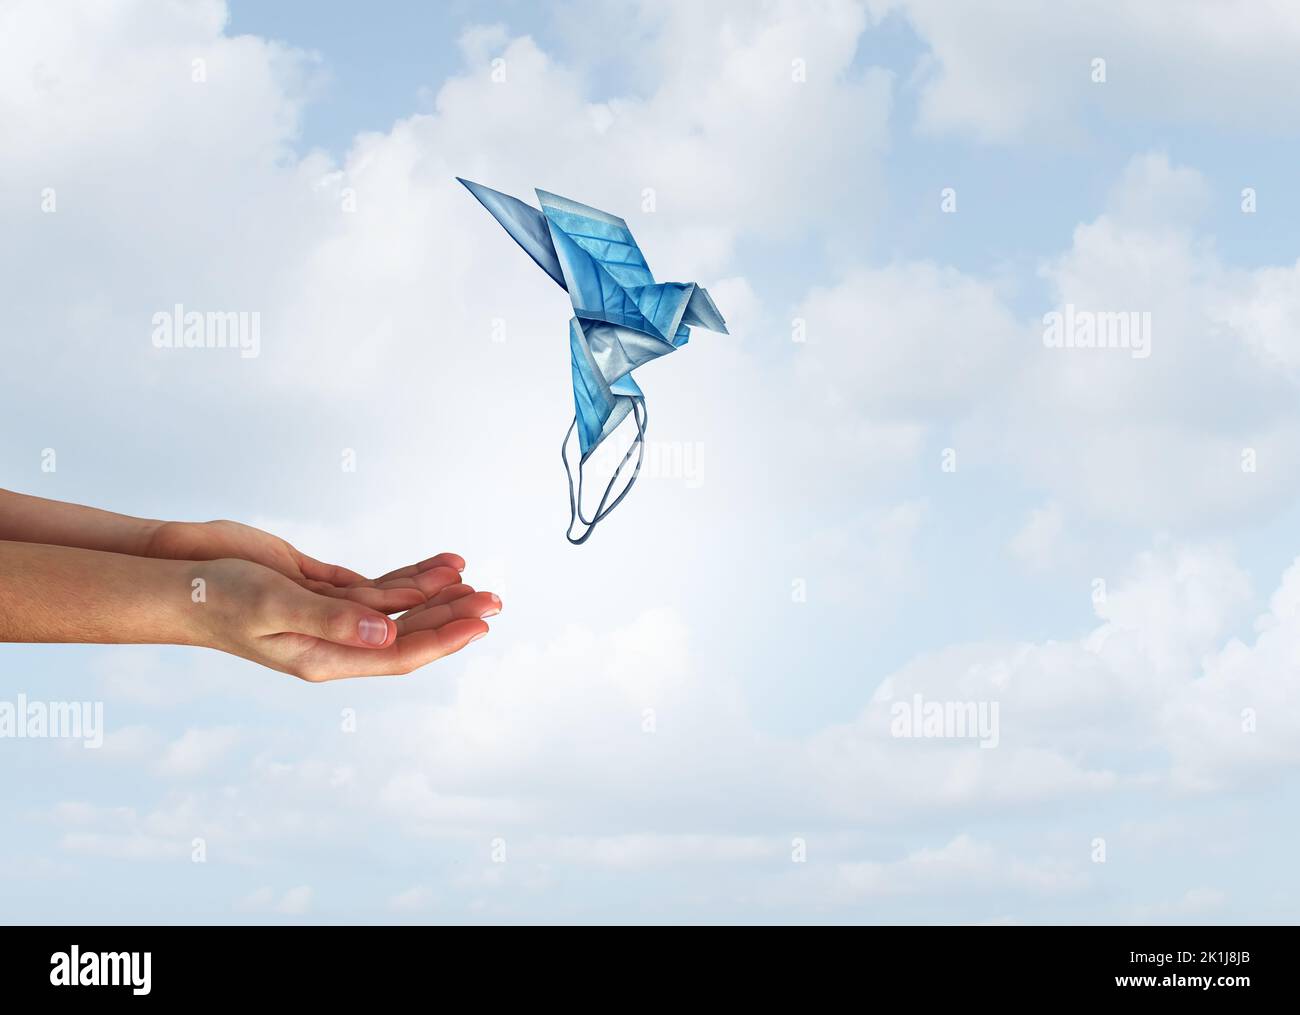 Concetto di speranza medica e la libertà come mani rilasciare una magica maschera volante a forma di uccello come un simbolo di salute per il successo della medicina. Foto Stock